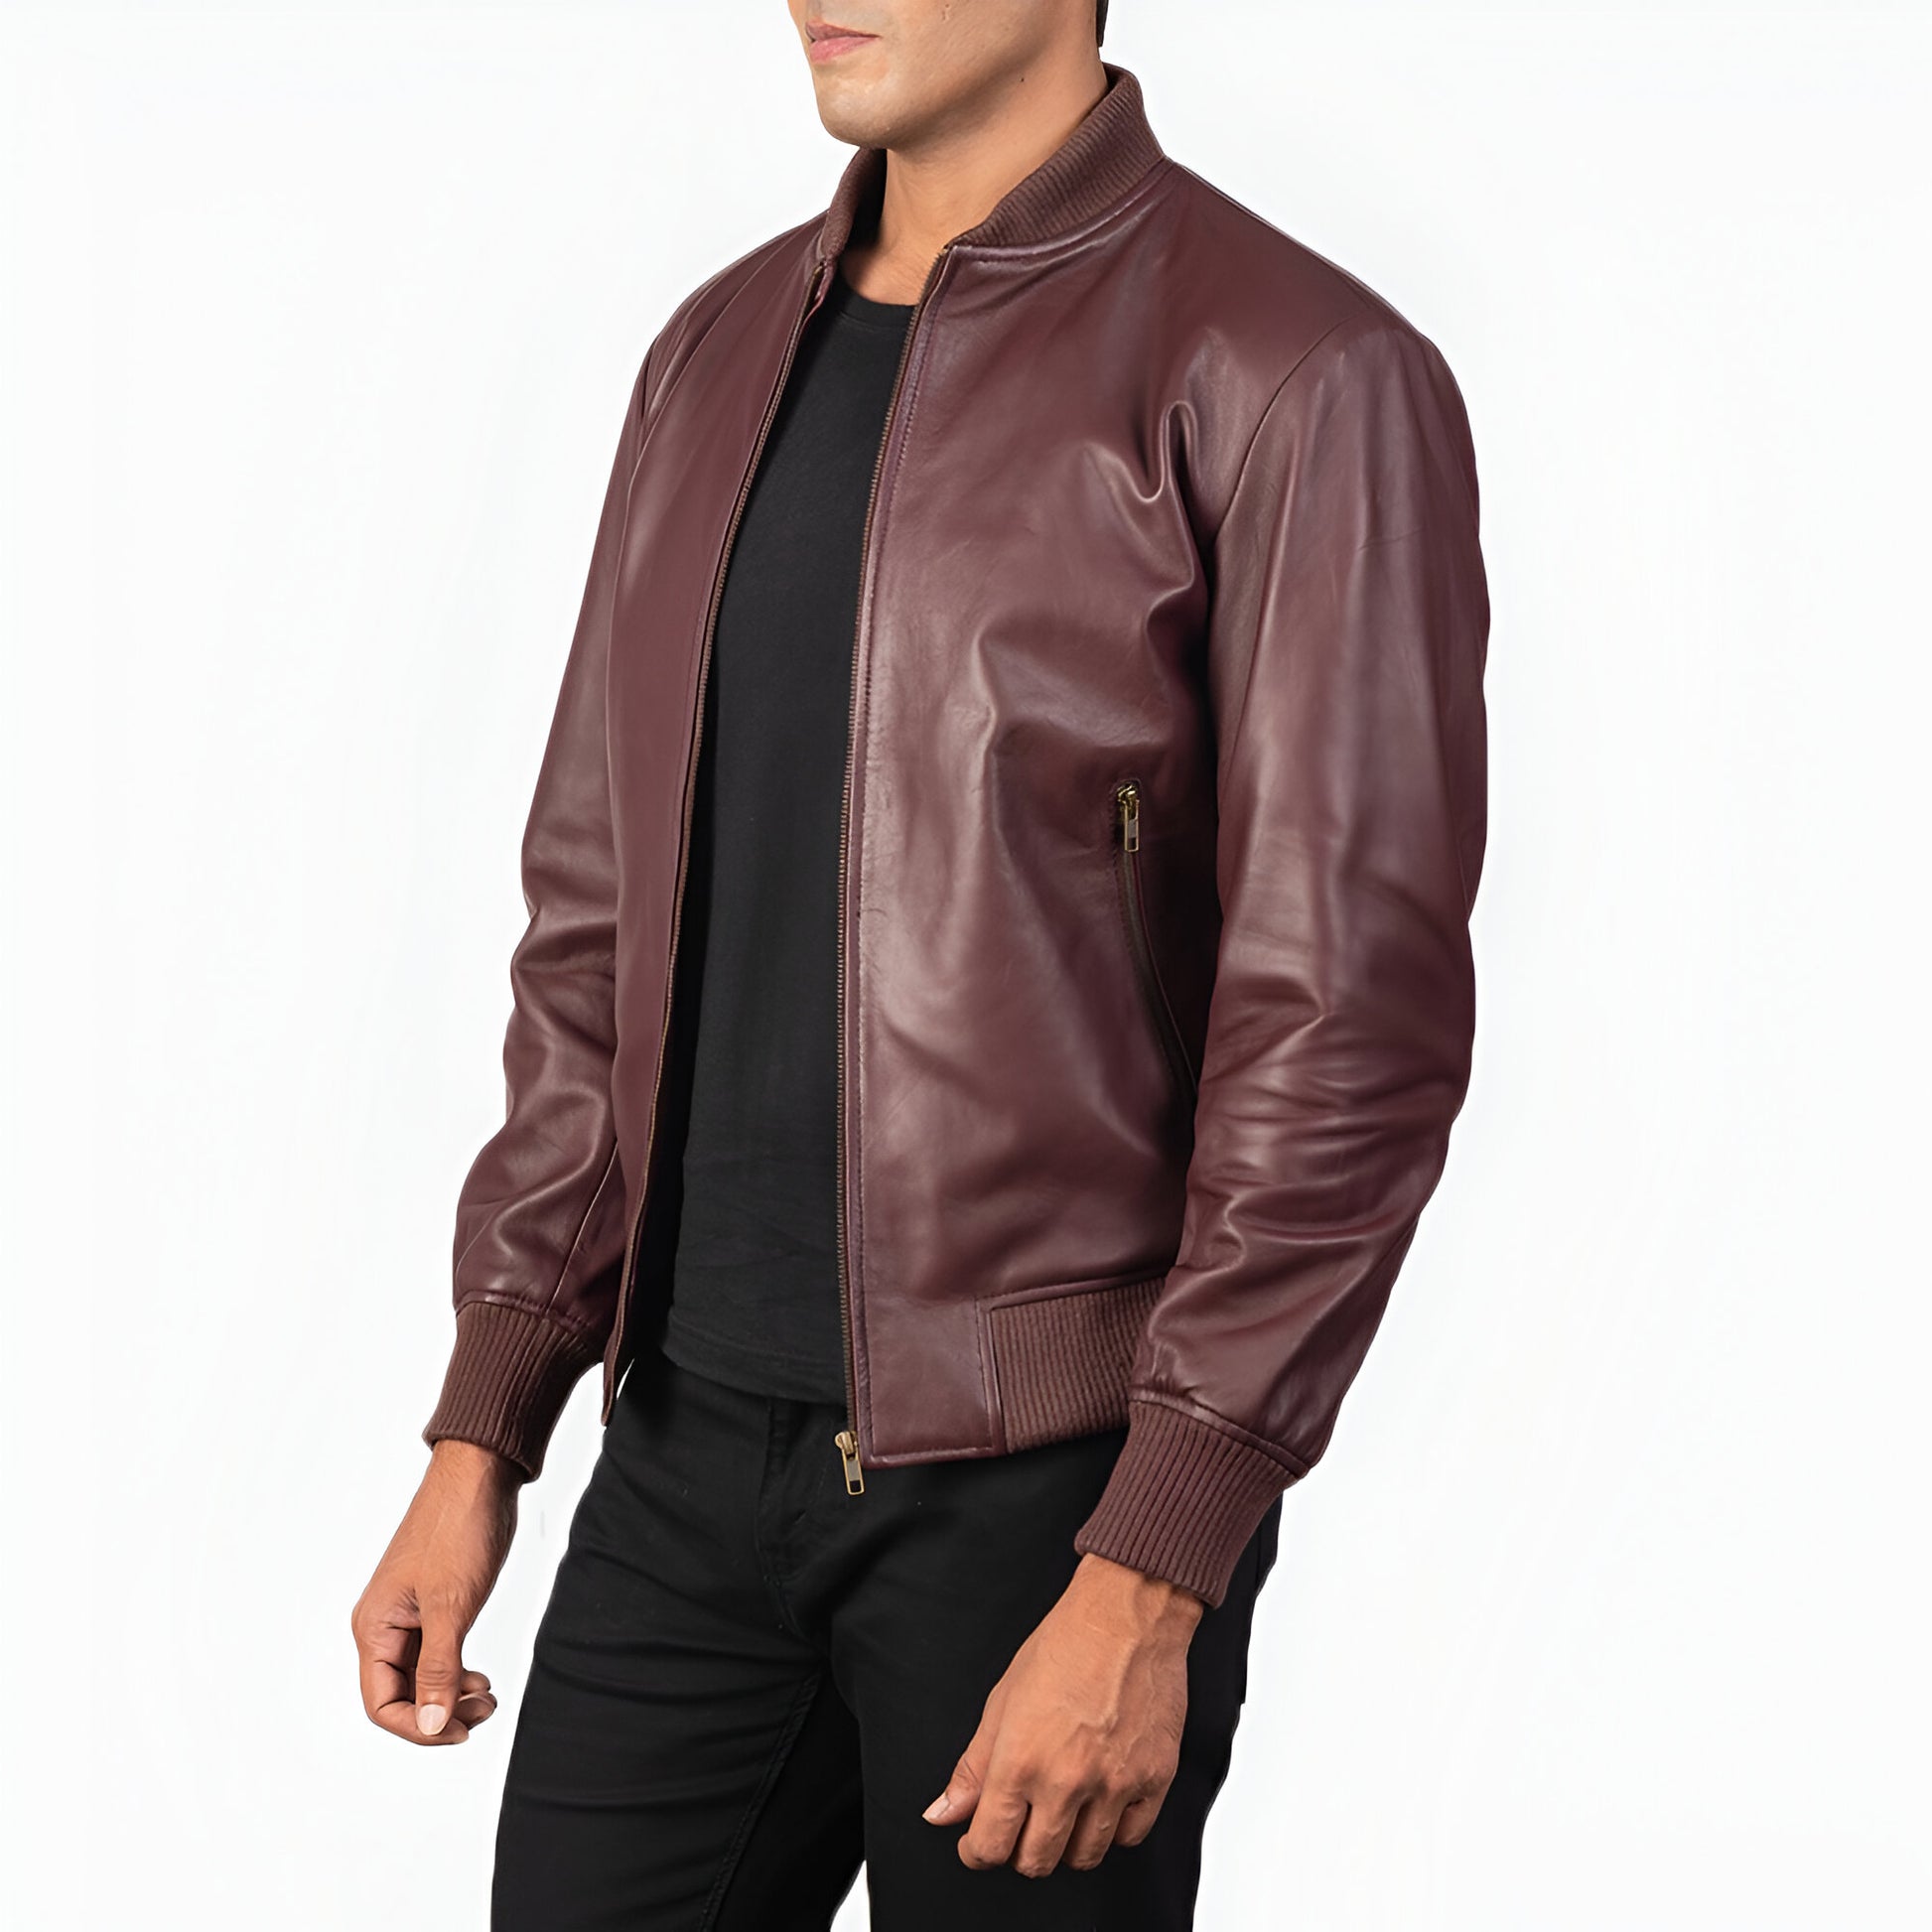 Tom Maroon Leather Bomber Jacket